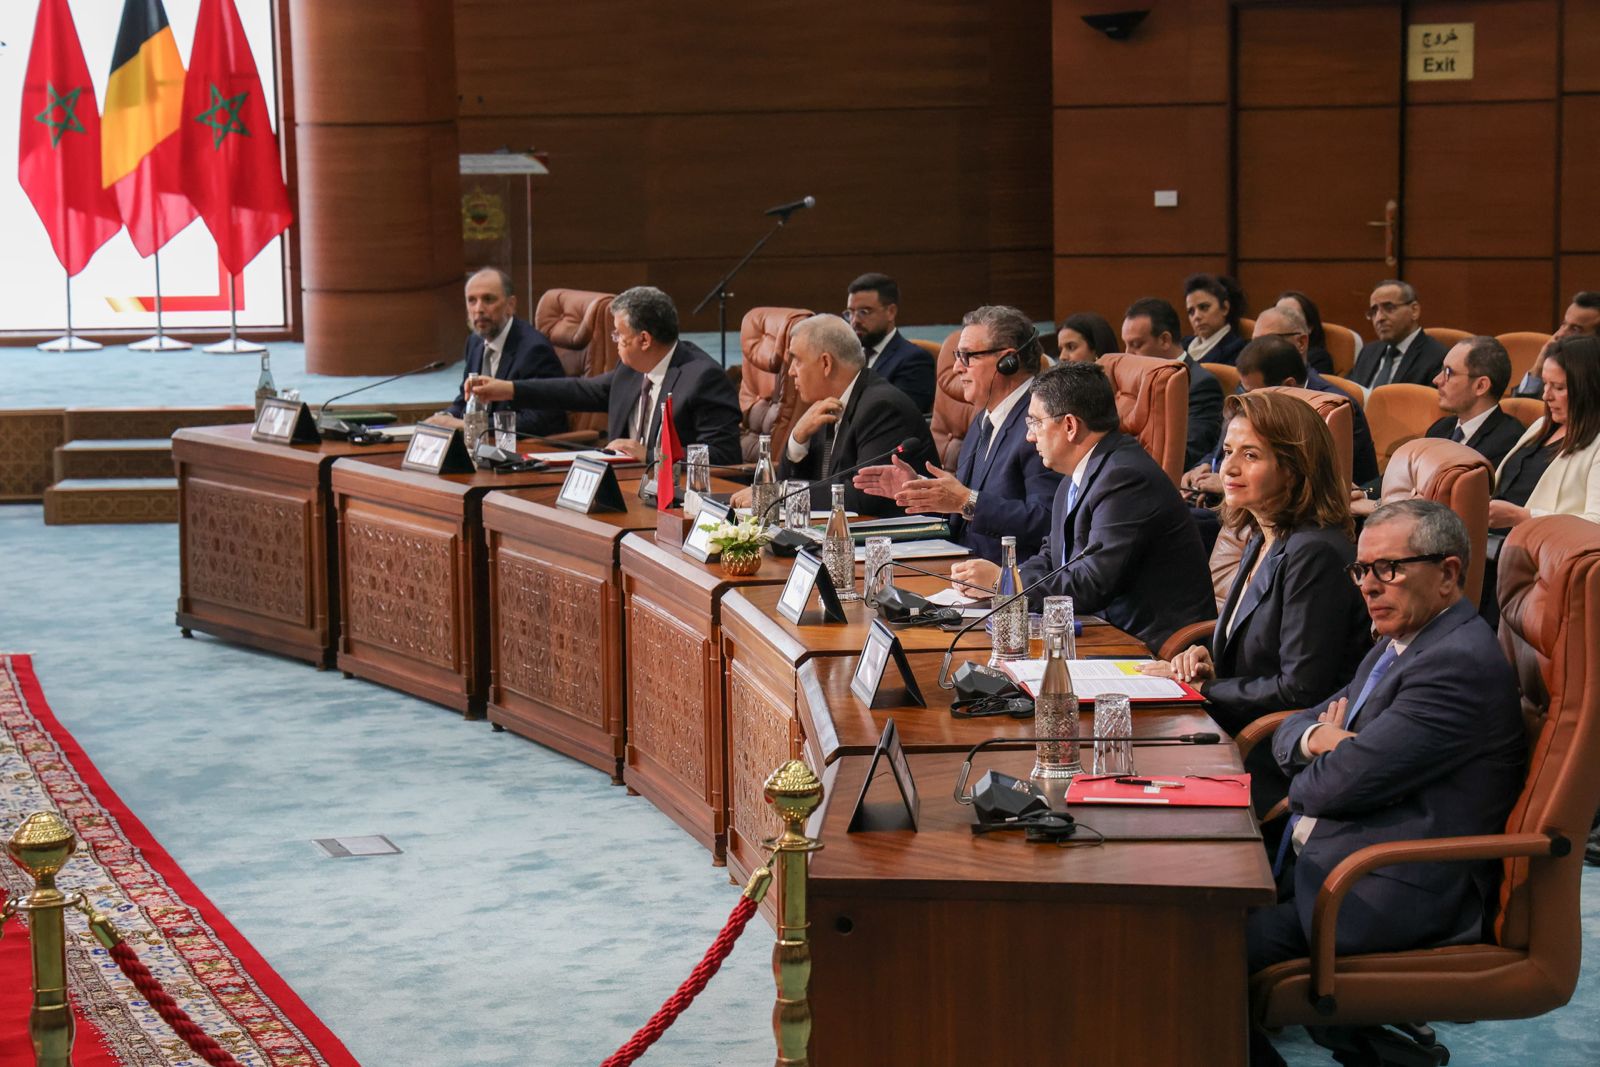 Le Maroc et la Belgique réaffirment leur volonté partagée d'établir un partenariat stratégique tourné vers l'avenir